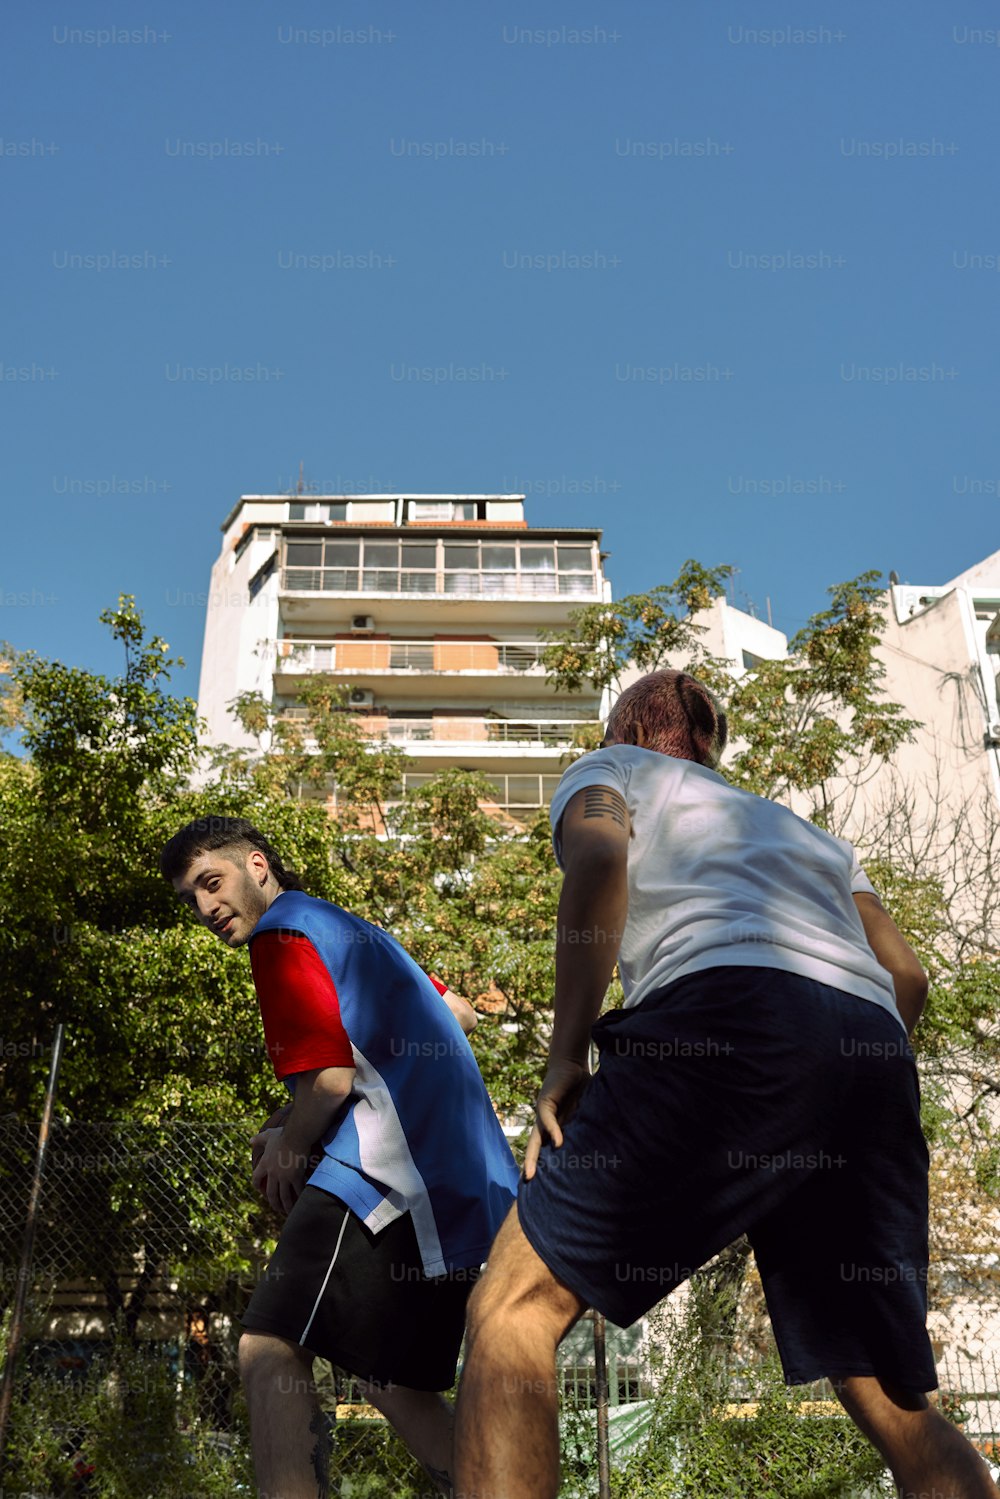 Un par de hombres jugando una partida de frisbee